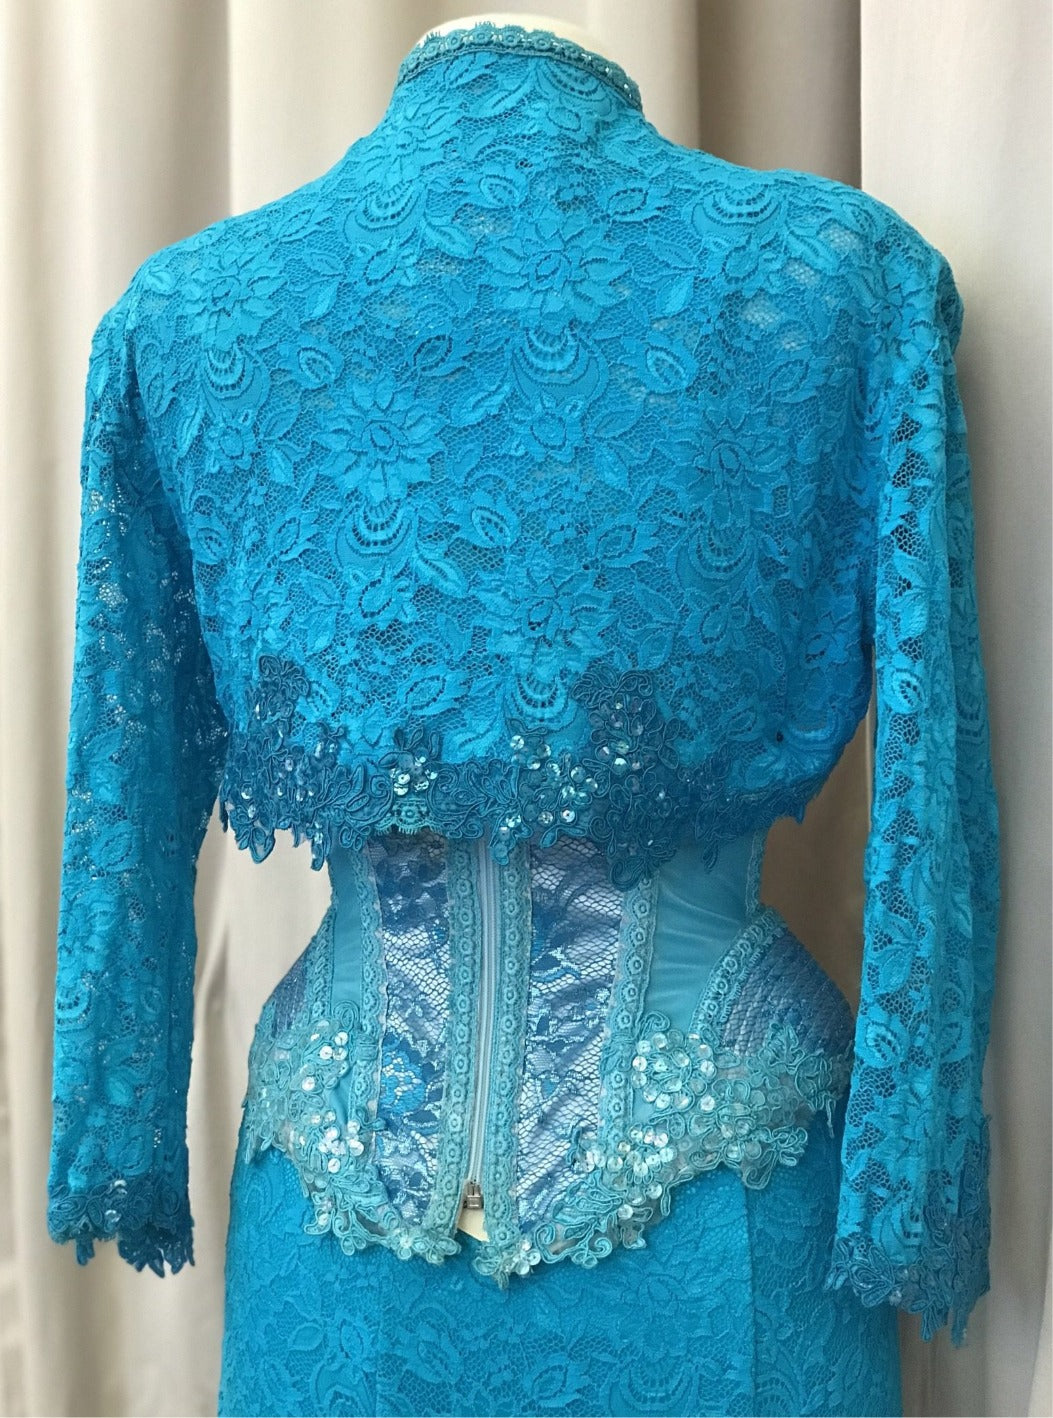 Turquoise vintage lace bolero jacket - Lucindas on-line